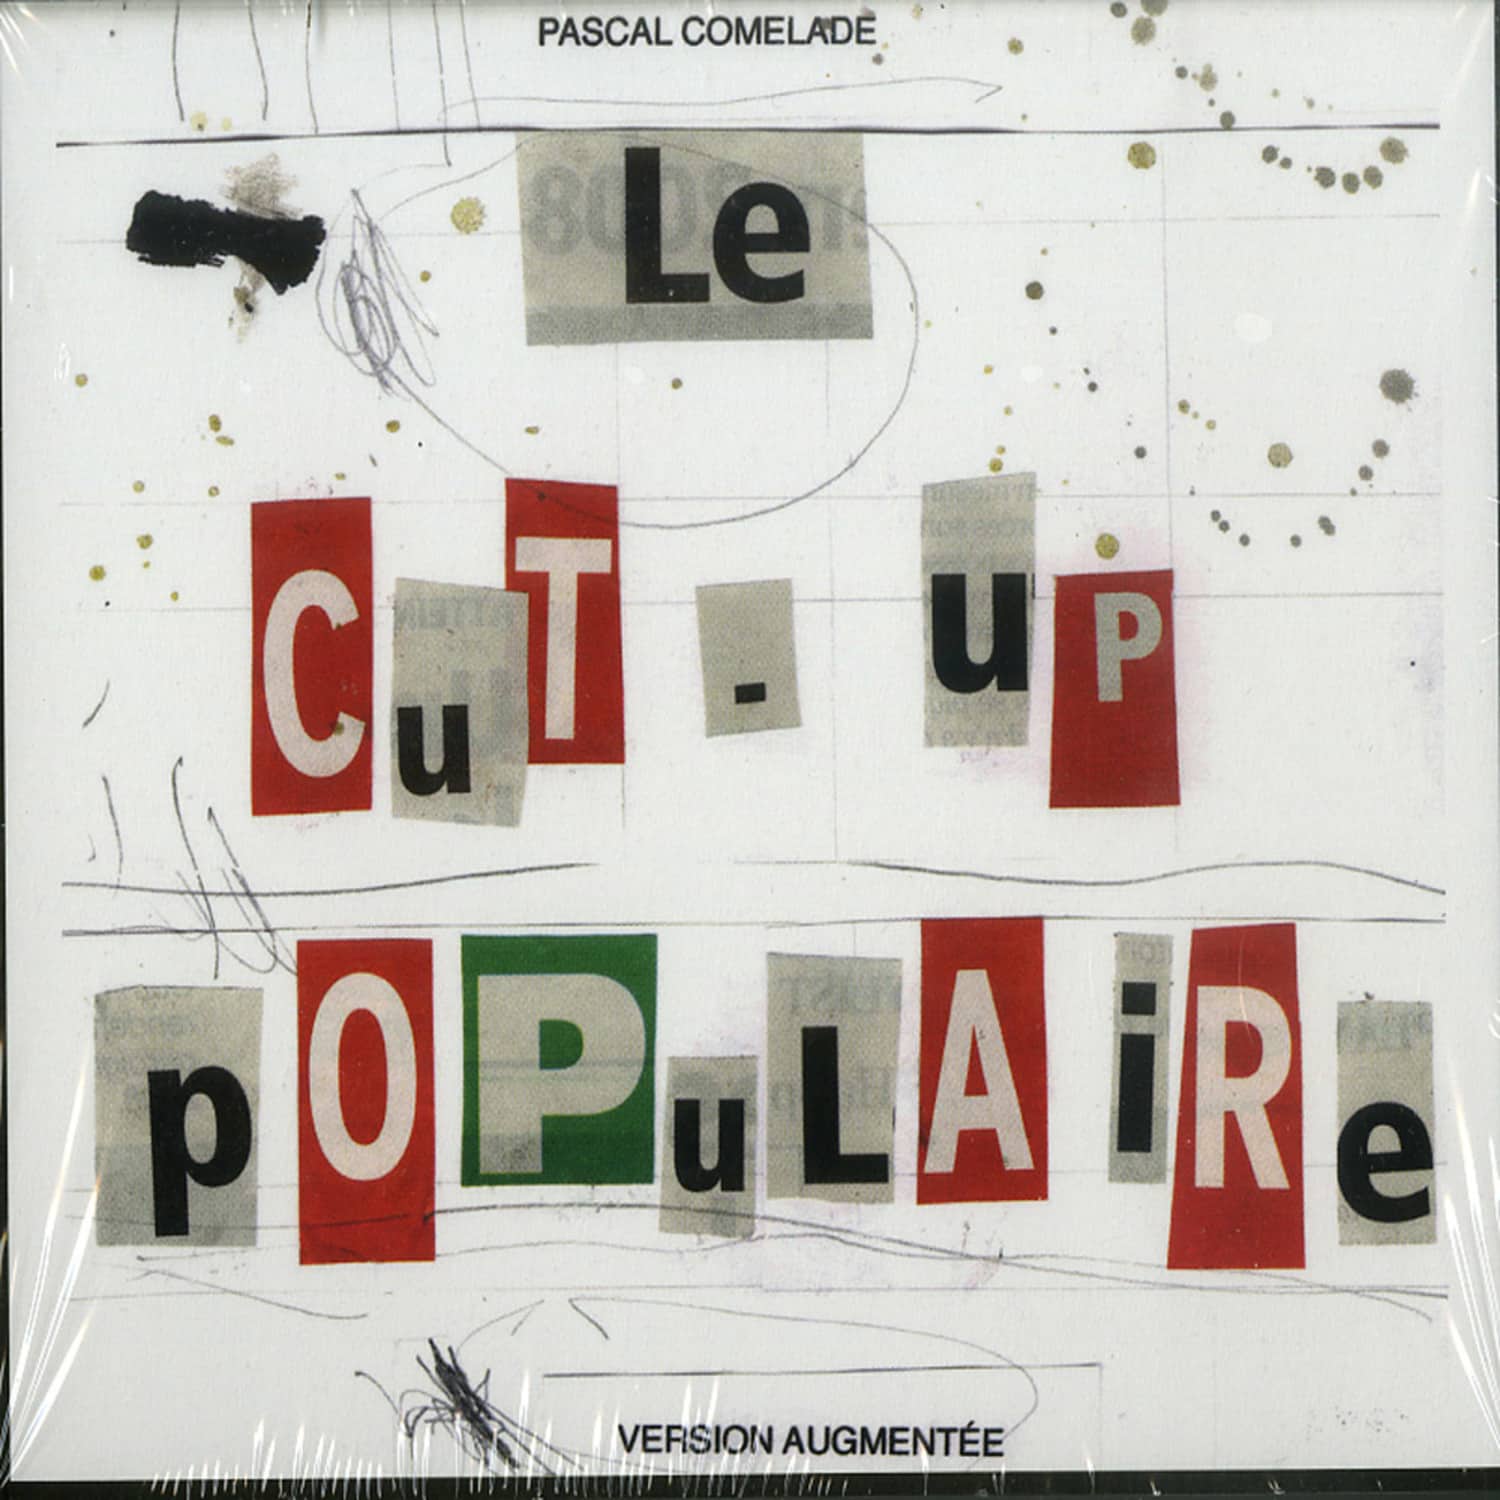 Pascal Comelade - LE CUT-UP POPULAIRE 